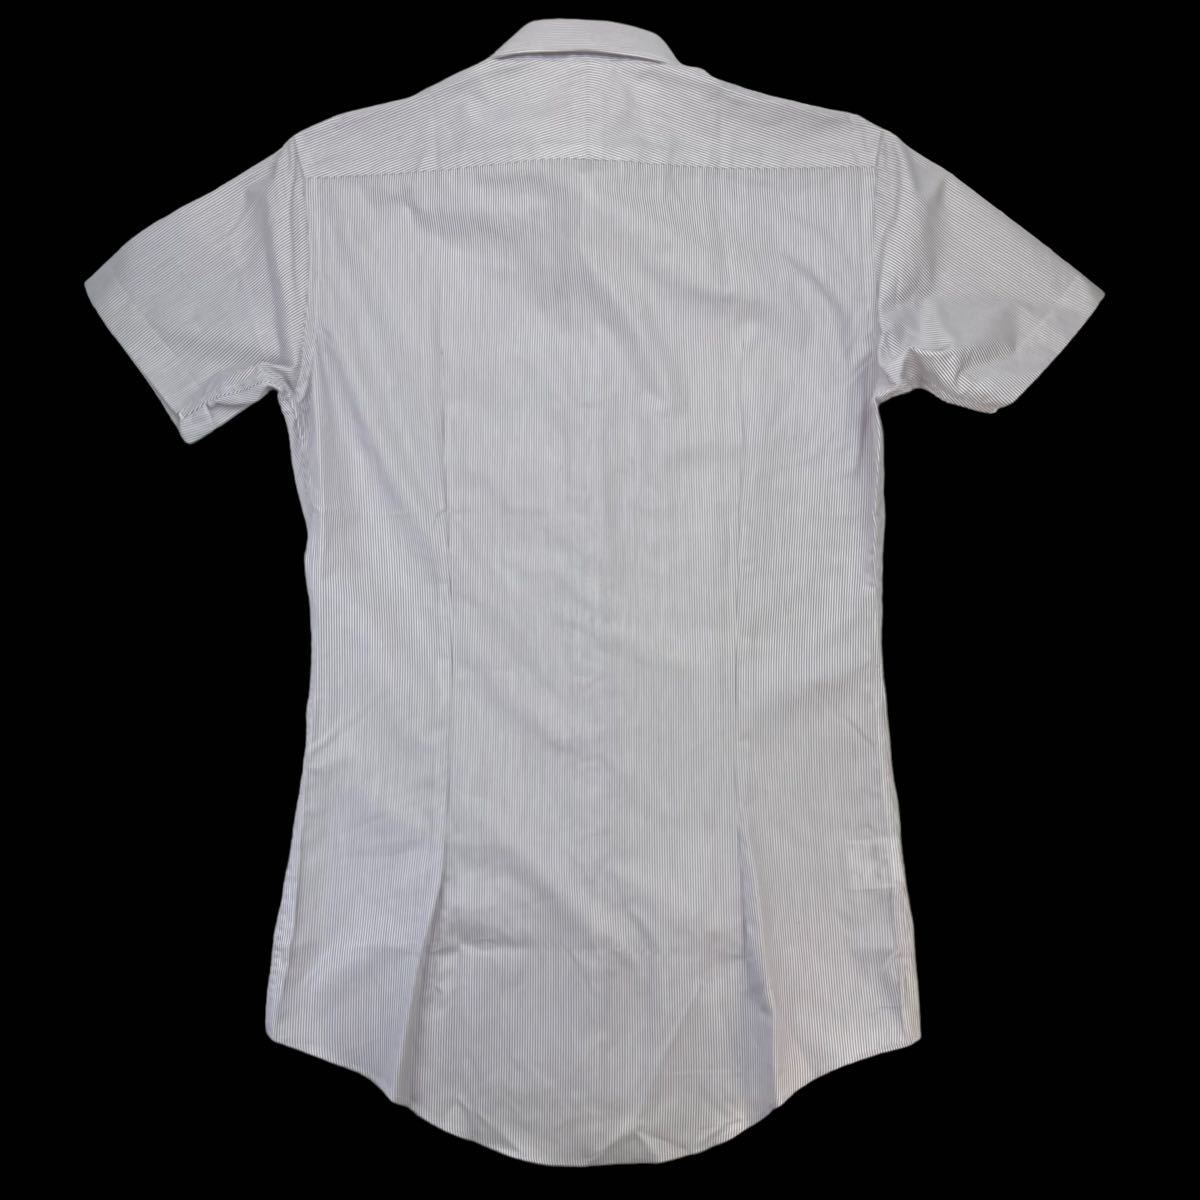 新品同様 BURBERRY BLACK LABEL バーバリーブラックレーベル 半袖シャツ ドレスシャツ サイズ38/M パープル ホワイト ストライプ柄 230361の画像6